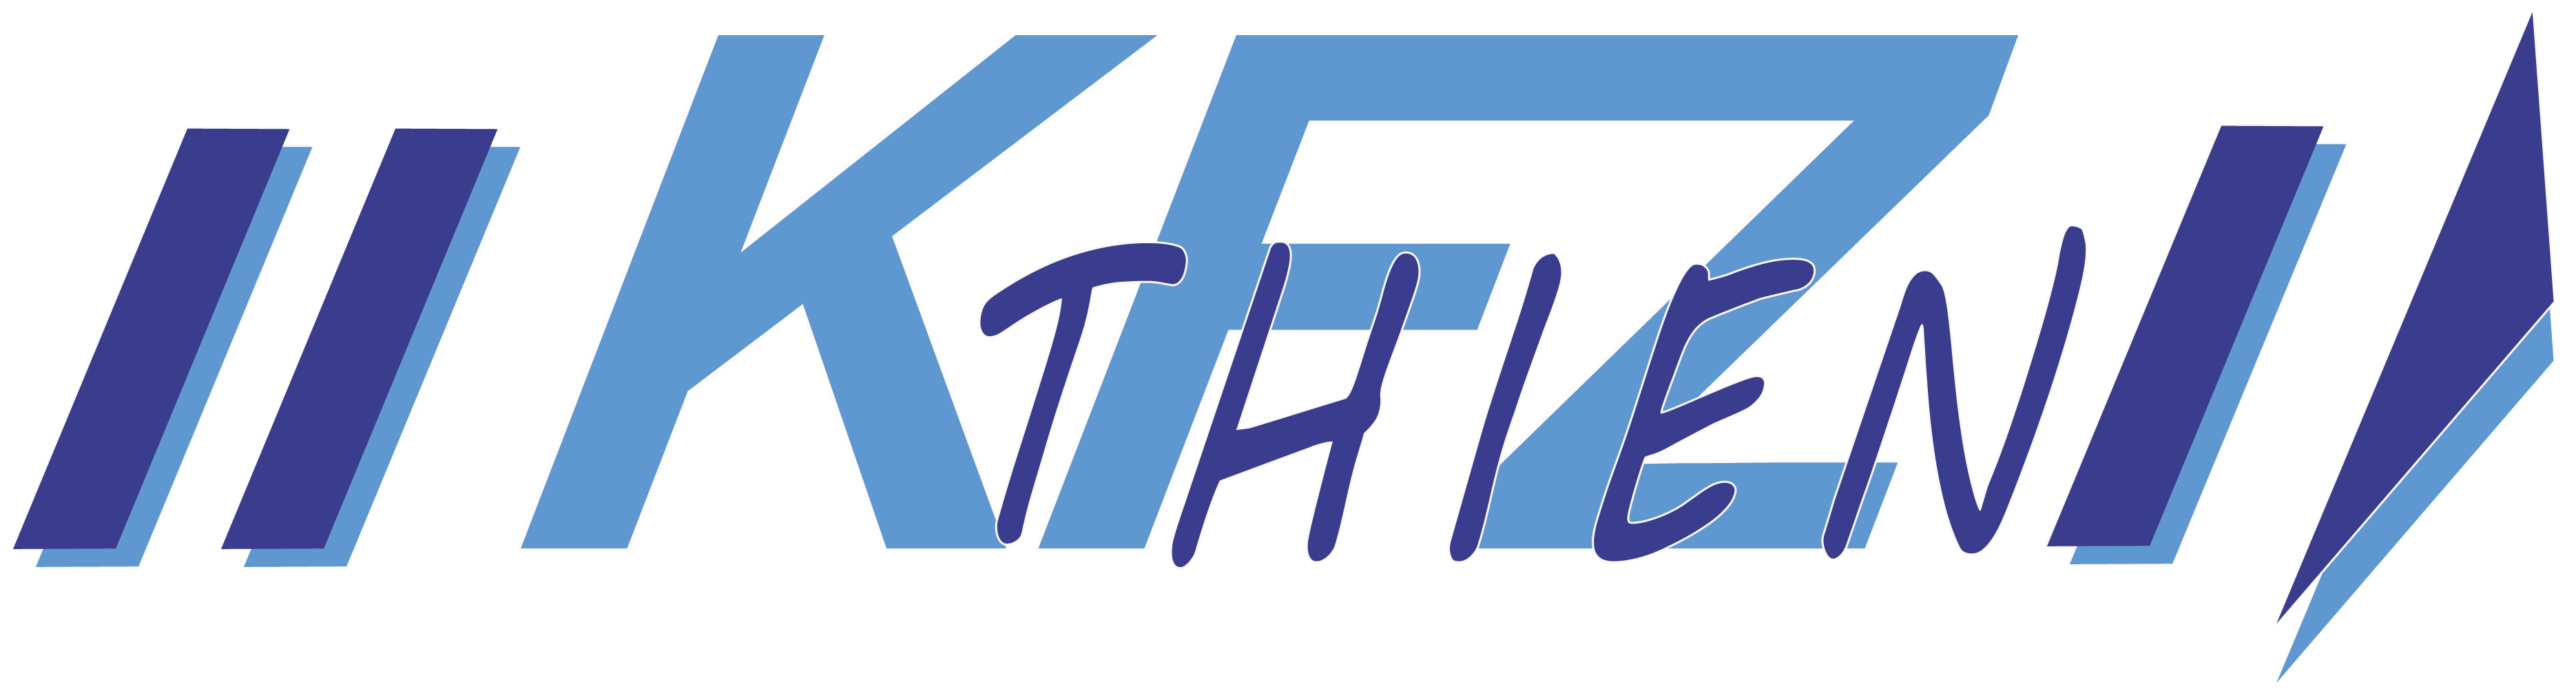 kfz-thien-fahrzeuge